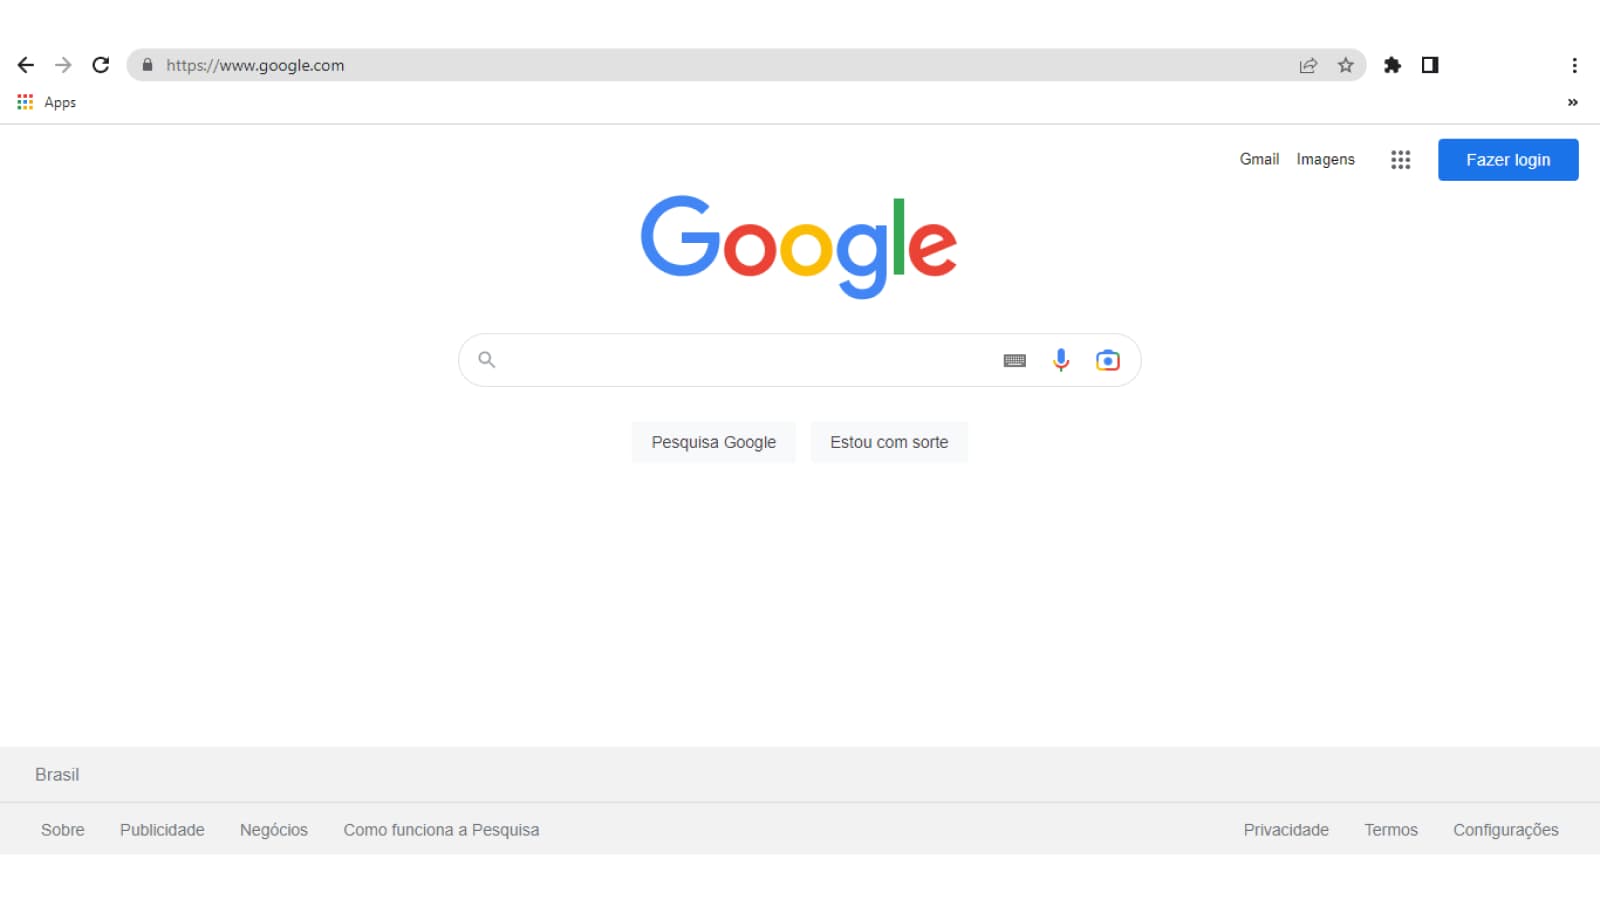 Tela inicial do Google no Chrome